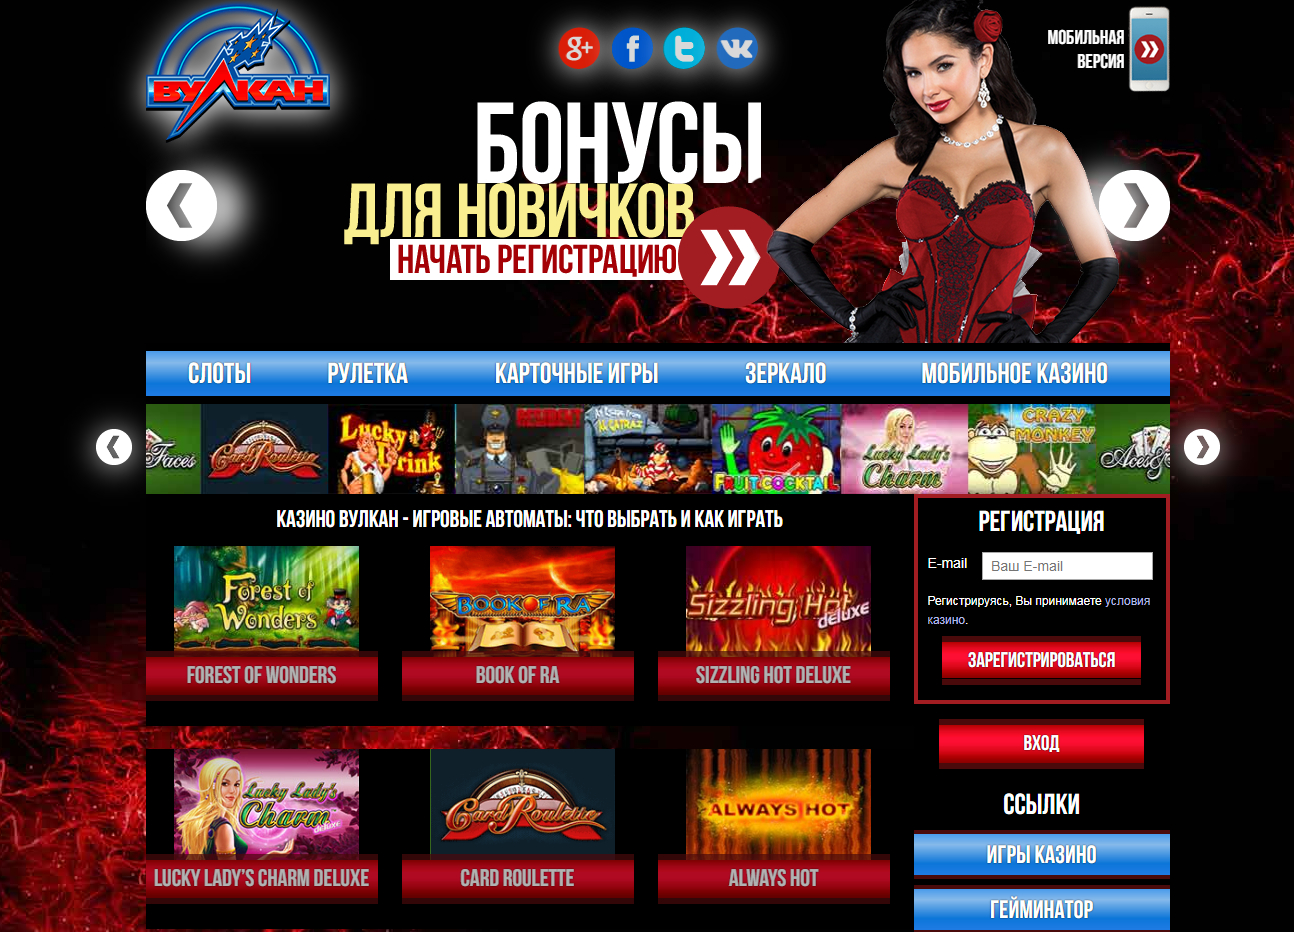 Мобильное казино вулкан россия чат рулетка по всему миру с девушками реальный без регистрации онлайн